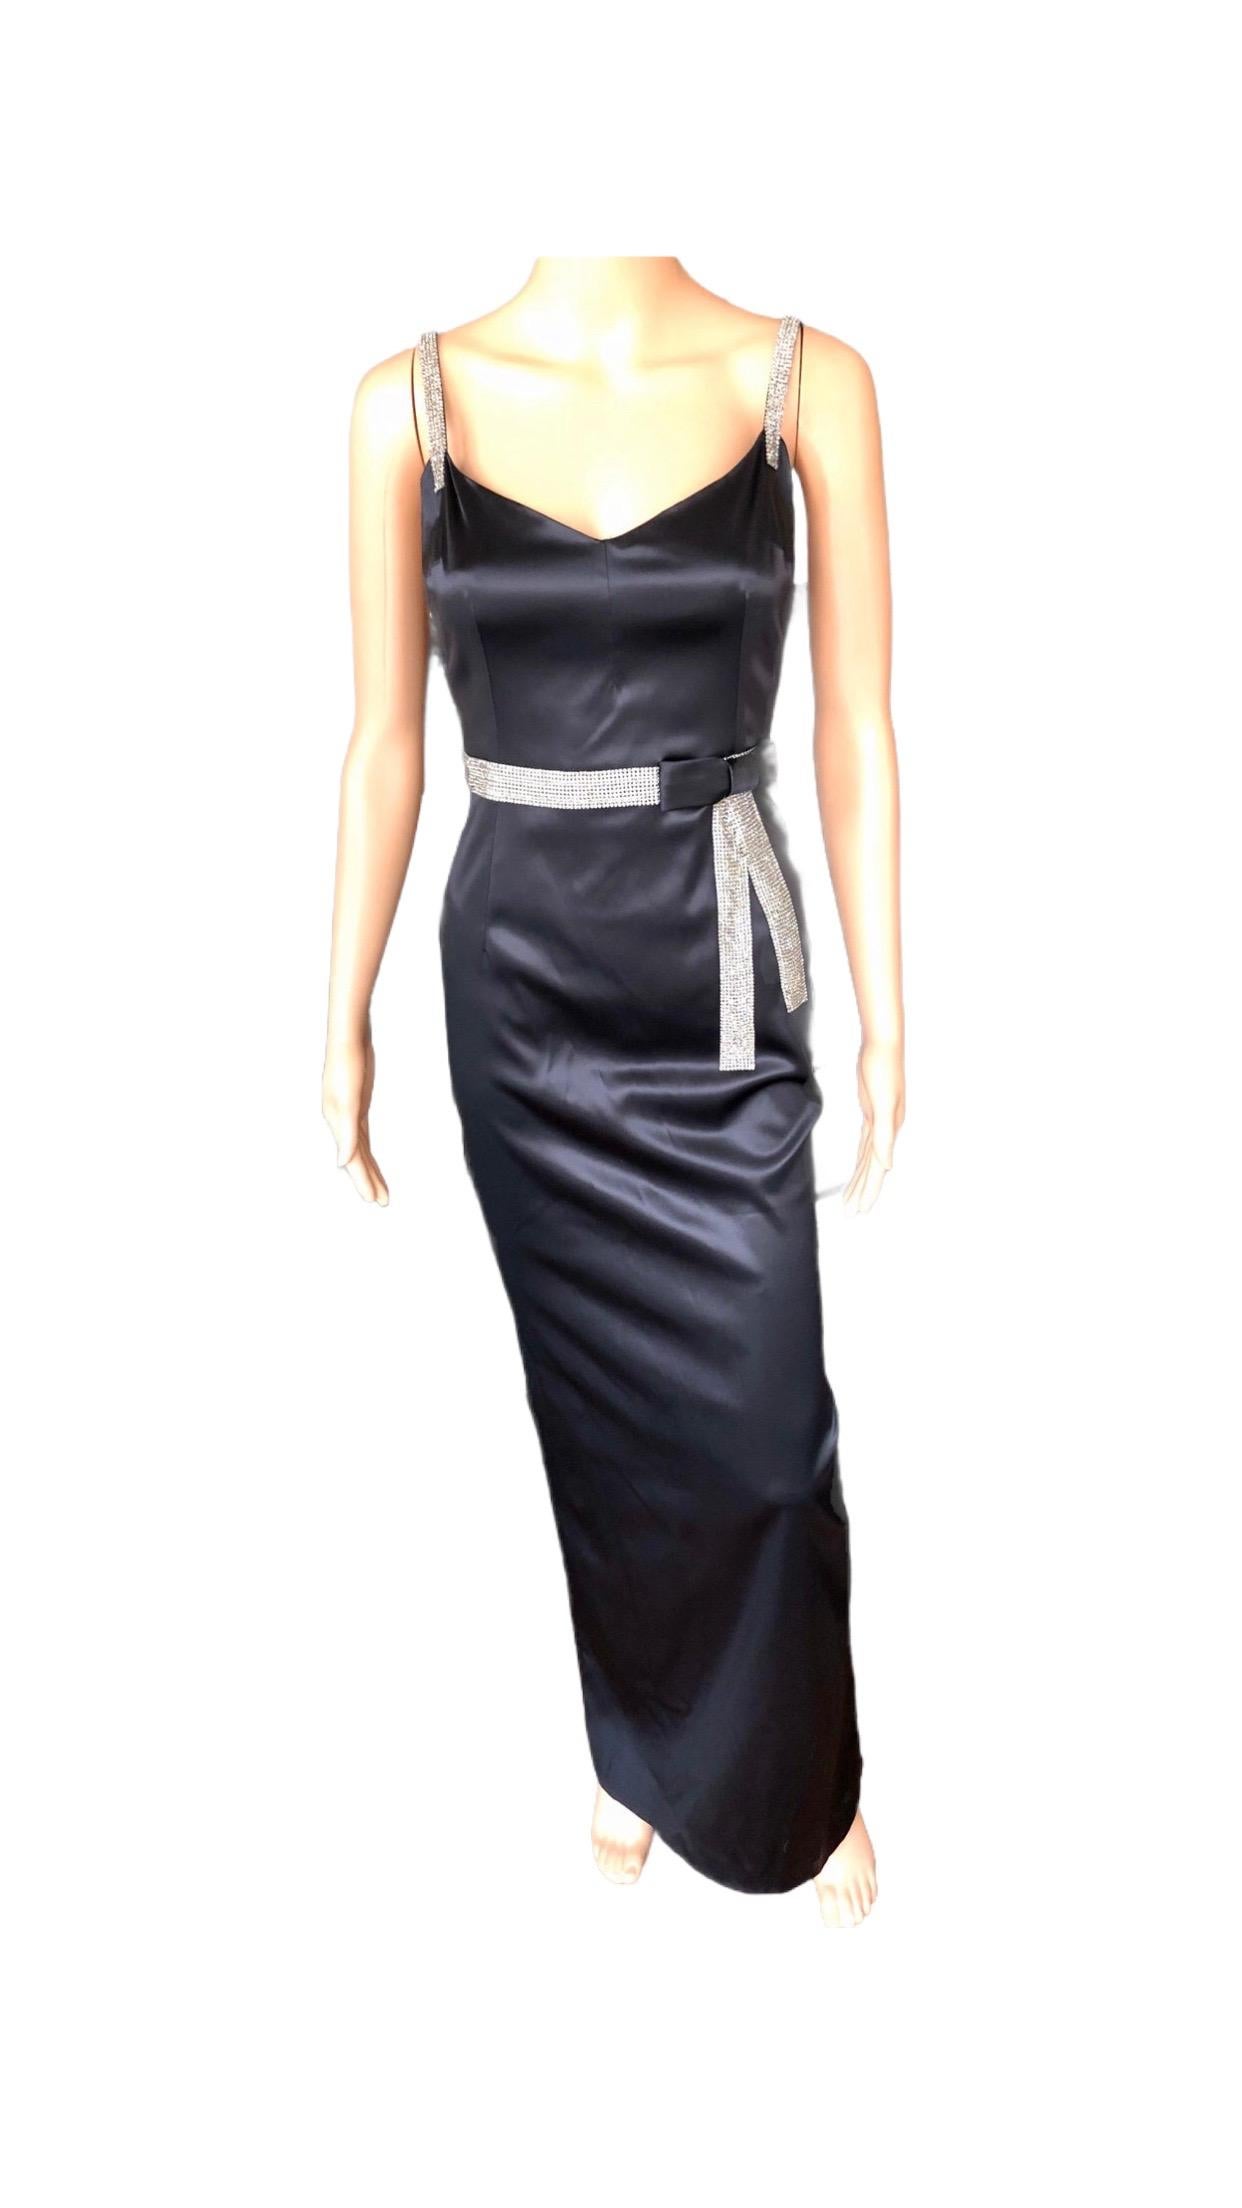 Dolce & Gabbana S/S 2004 Embellished Crystal Belt Satin Black Evening Dress Gown For Sale 2